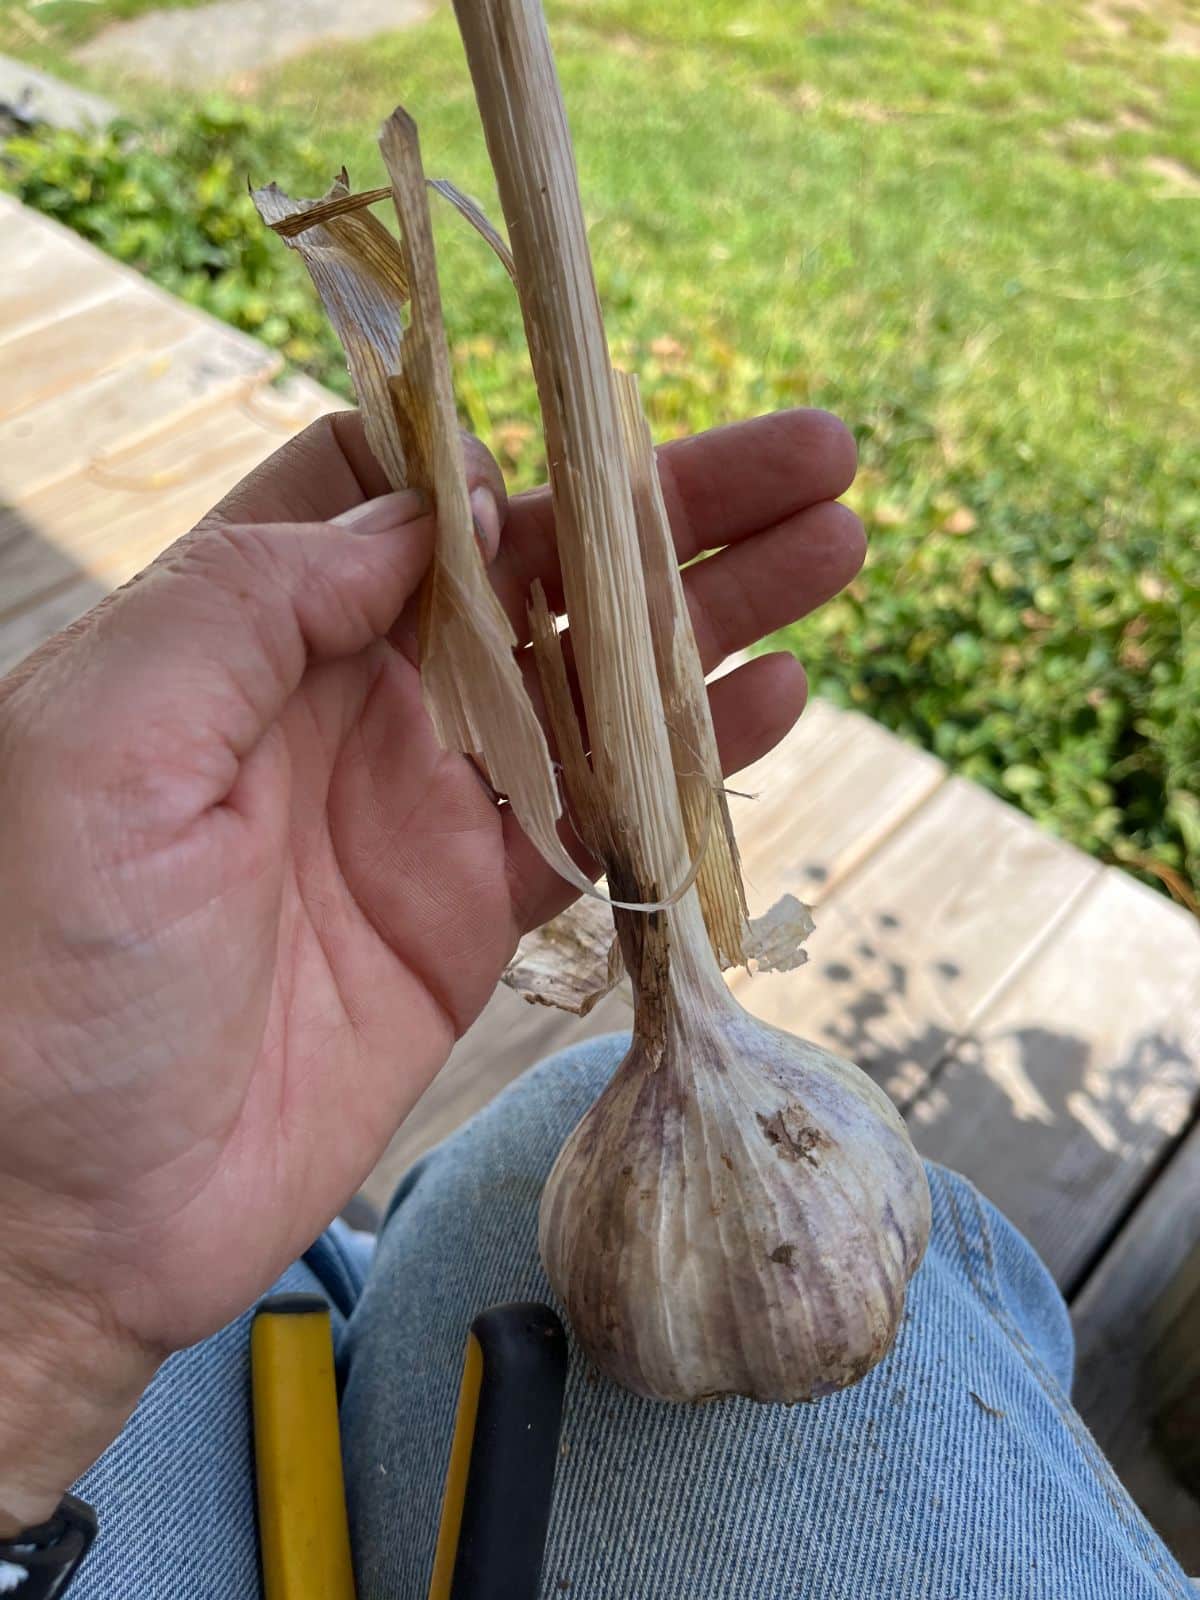 Cleaning and trimming hardneck garlic for making DIY garlic bundles